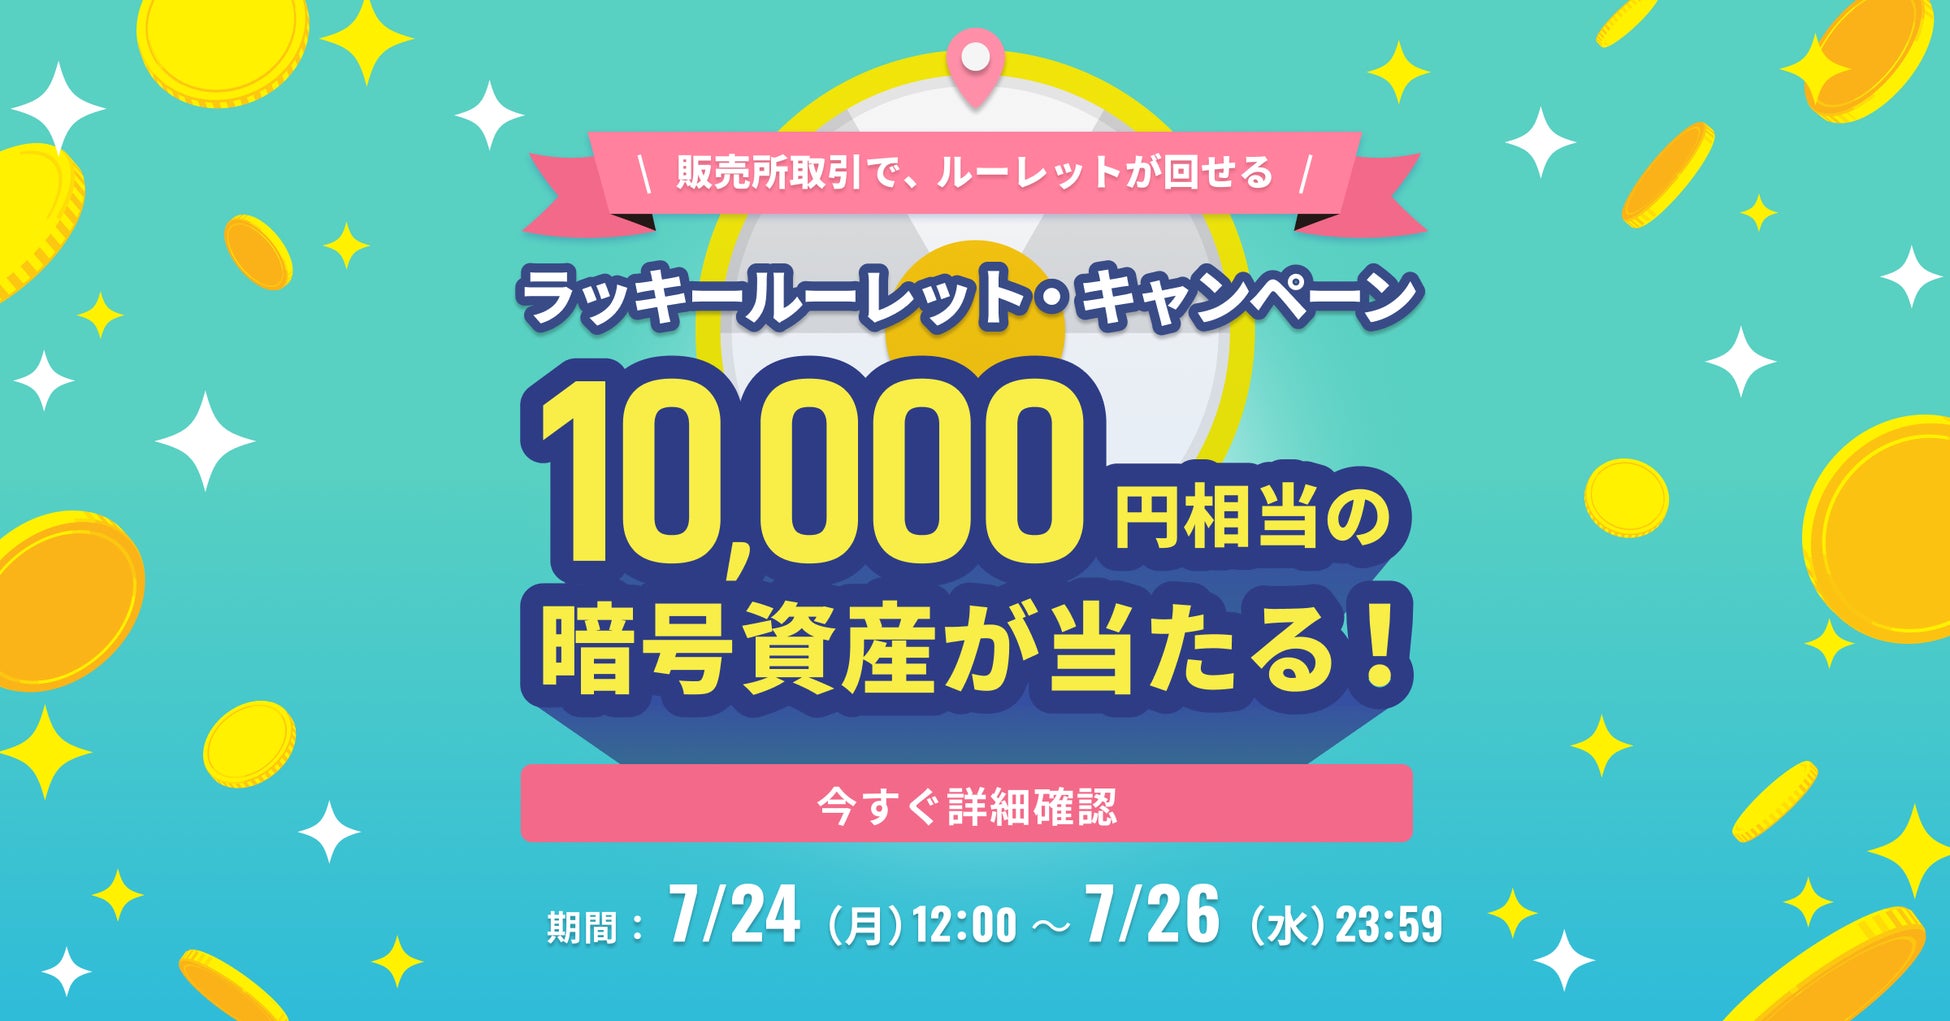 【3日間限定】ラッキールーレットキャンペーン実施～1万円相当の暗号資産が当たる！～